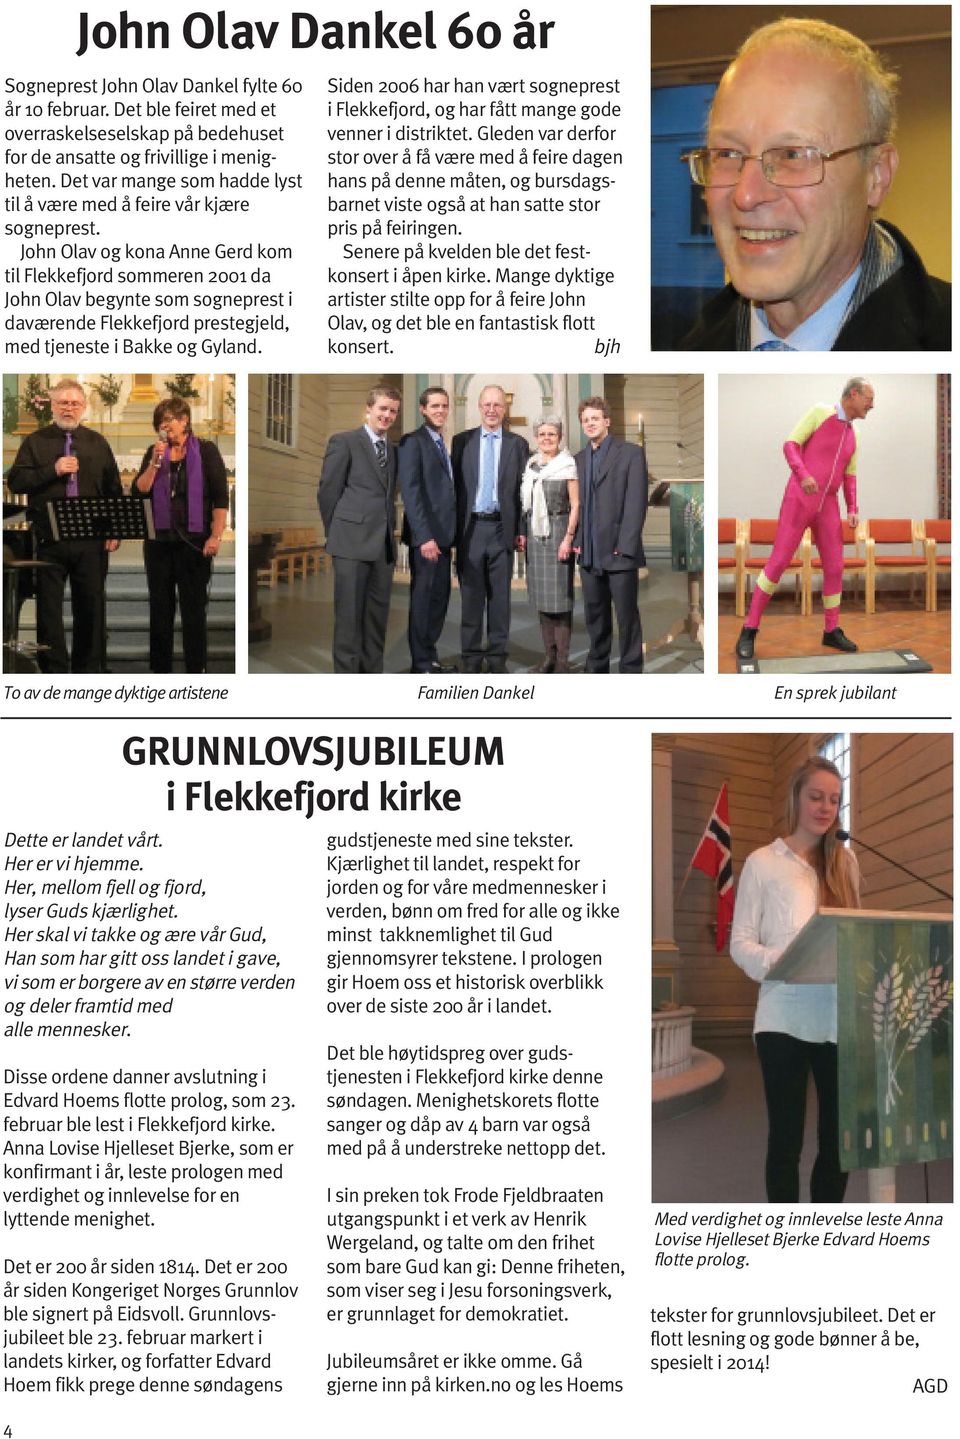 John Olav og kona Anne Gerd kom til Flekkefjord sommeren 2001 da John Olav begynte som sogneprest i daværende Flekkefjord prestegjeld, med tjeneste i Bakke og Gyland.